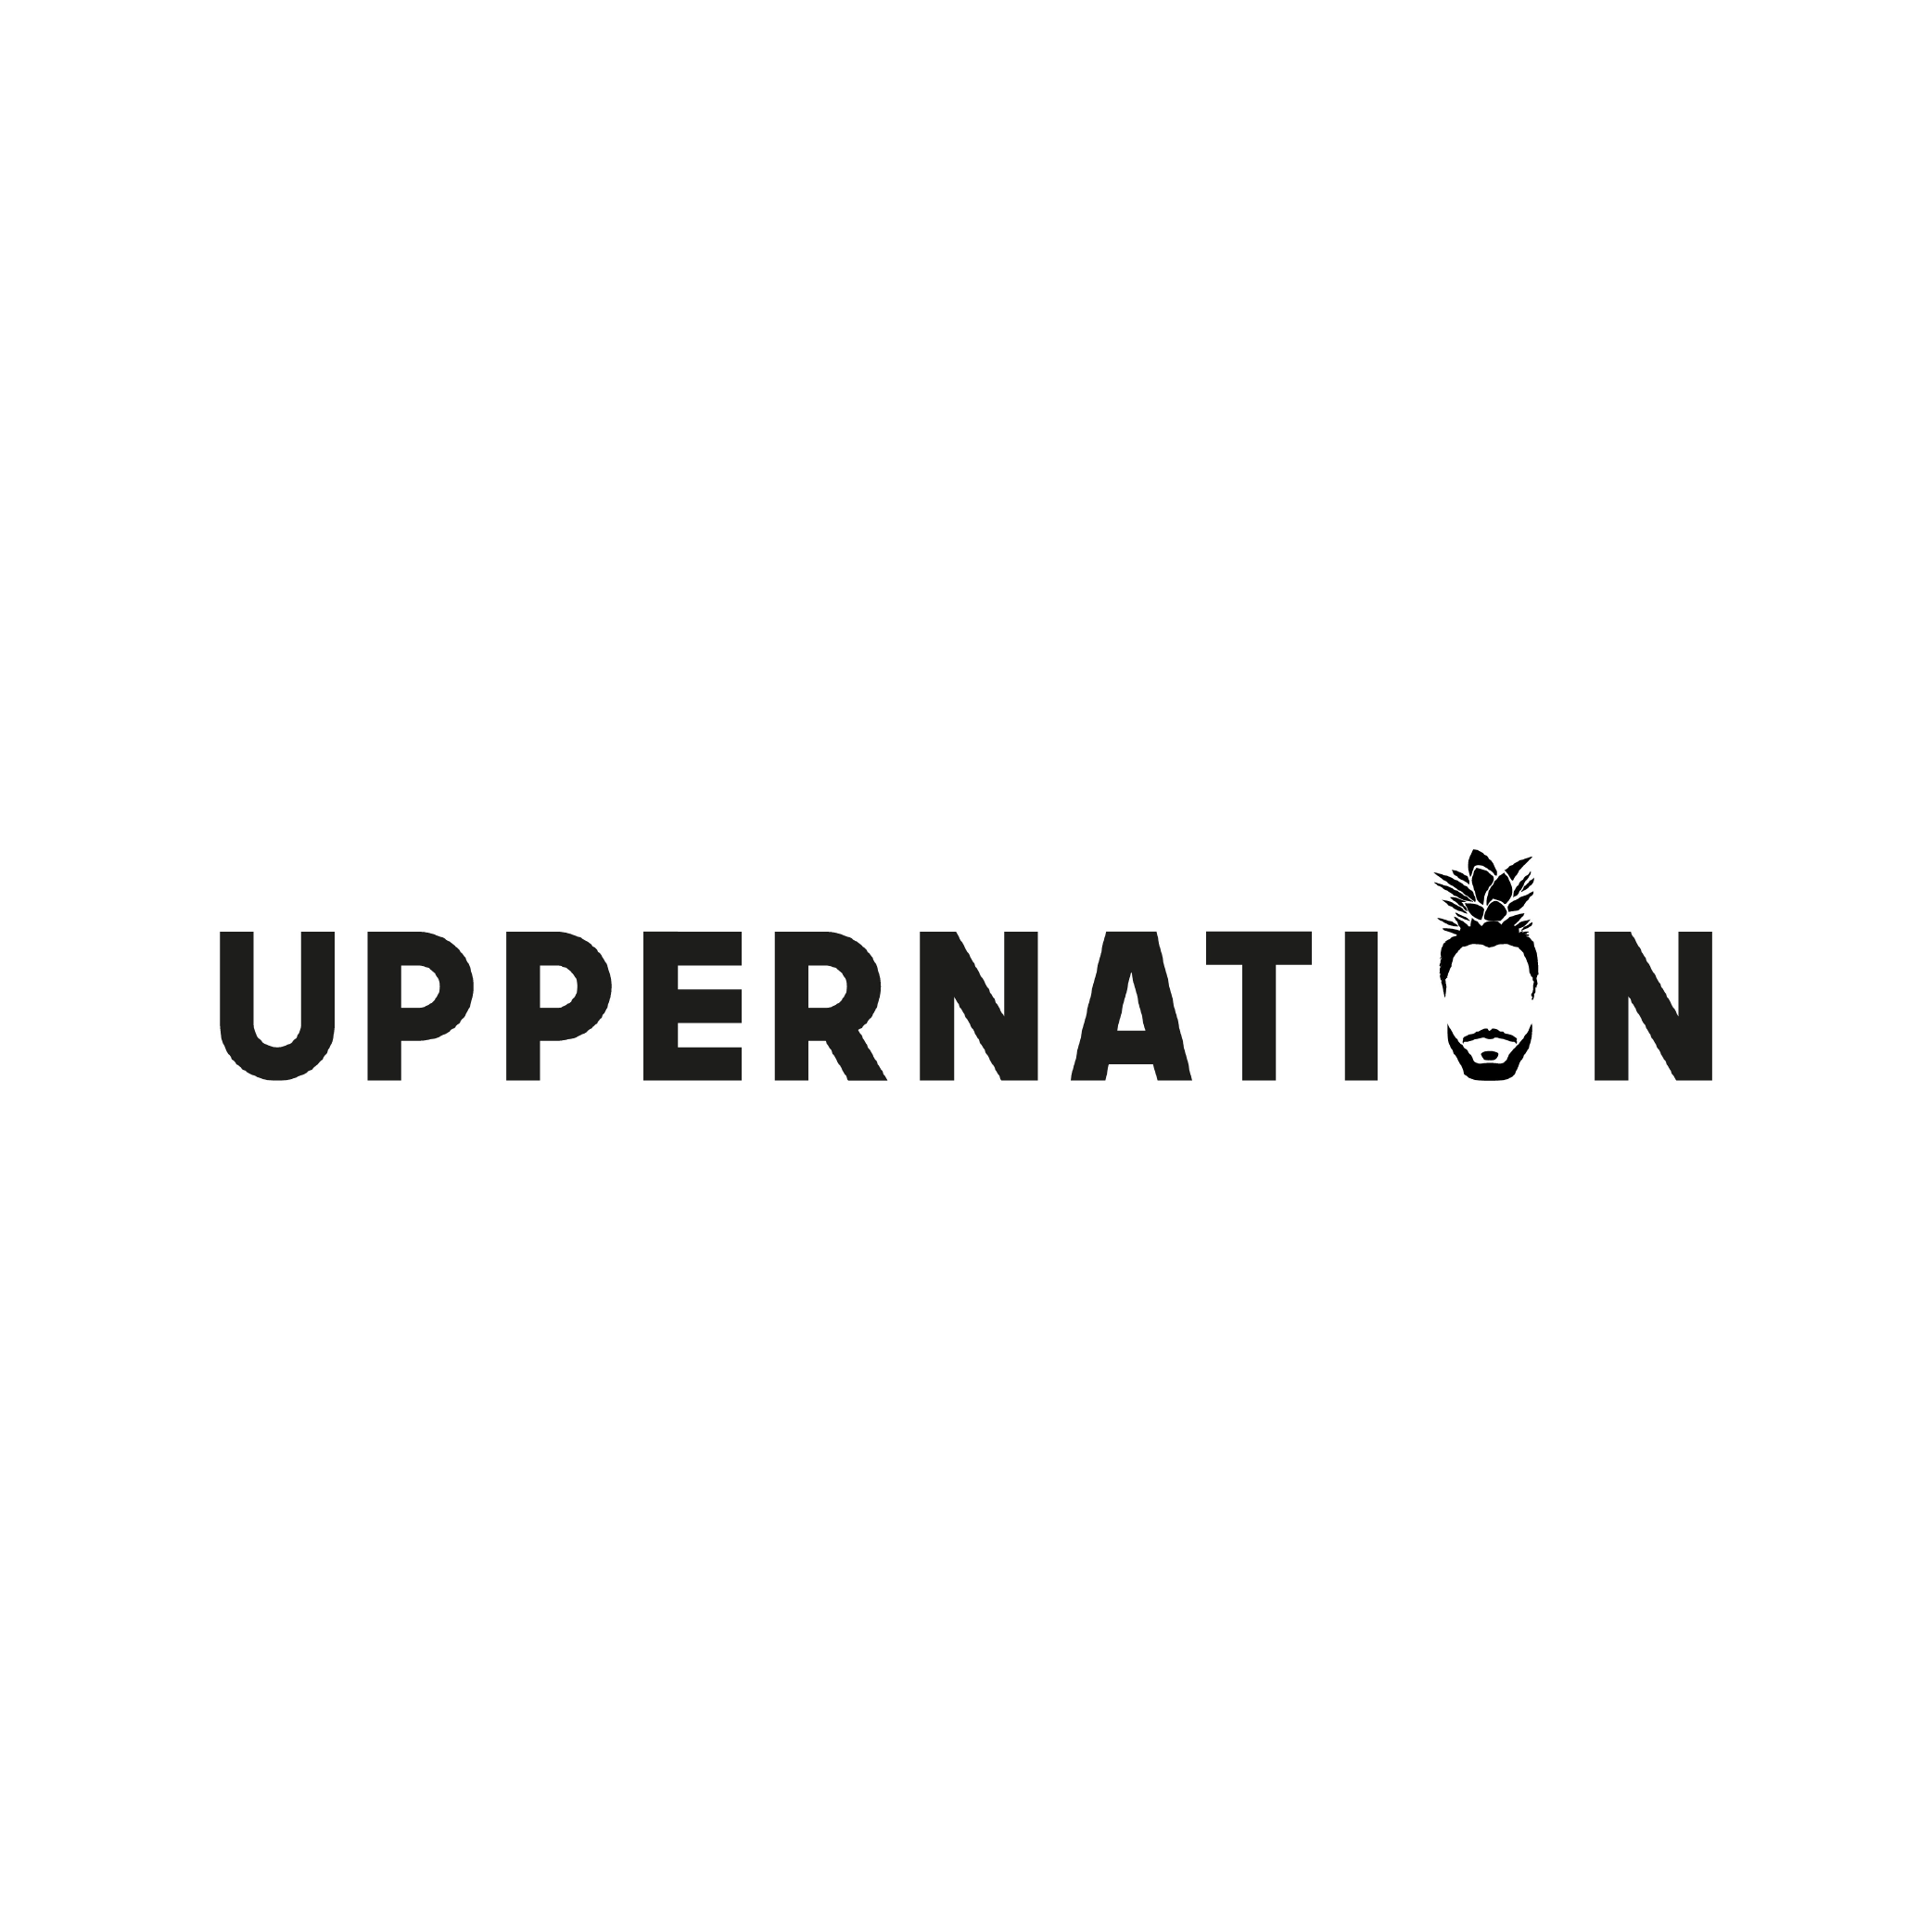 Uppernation